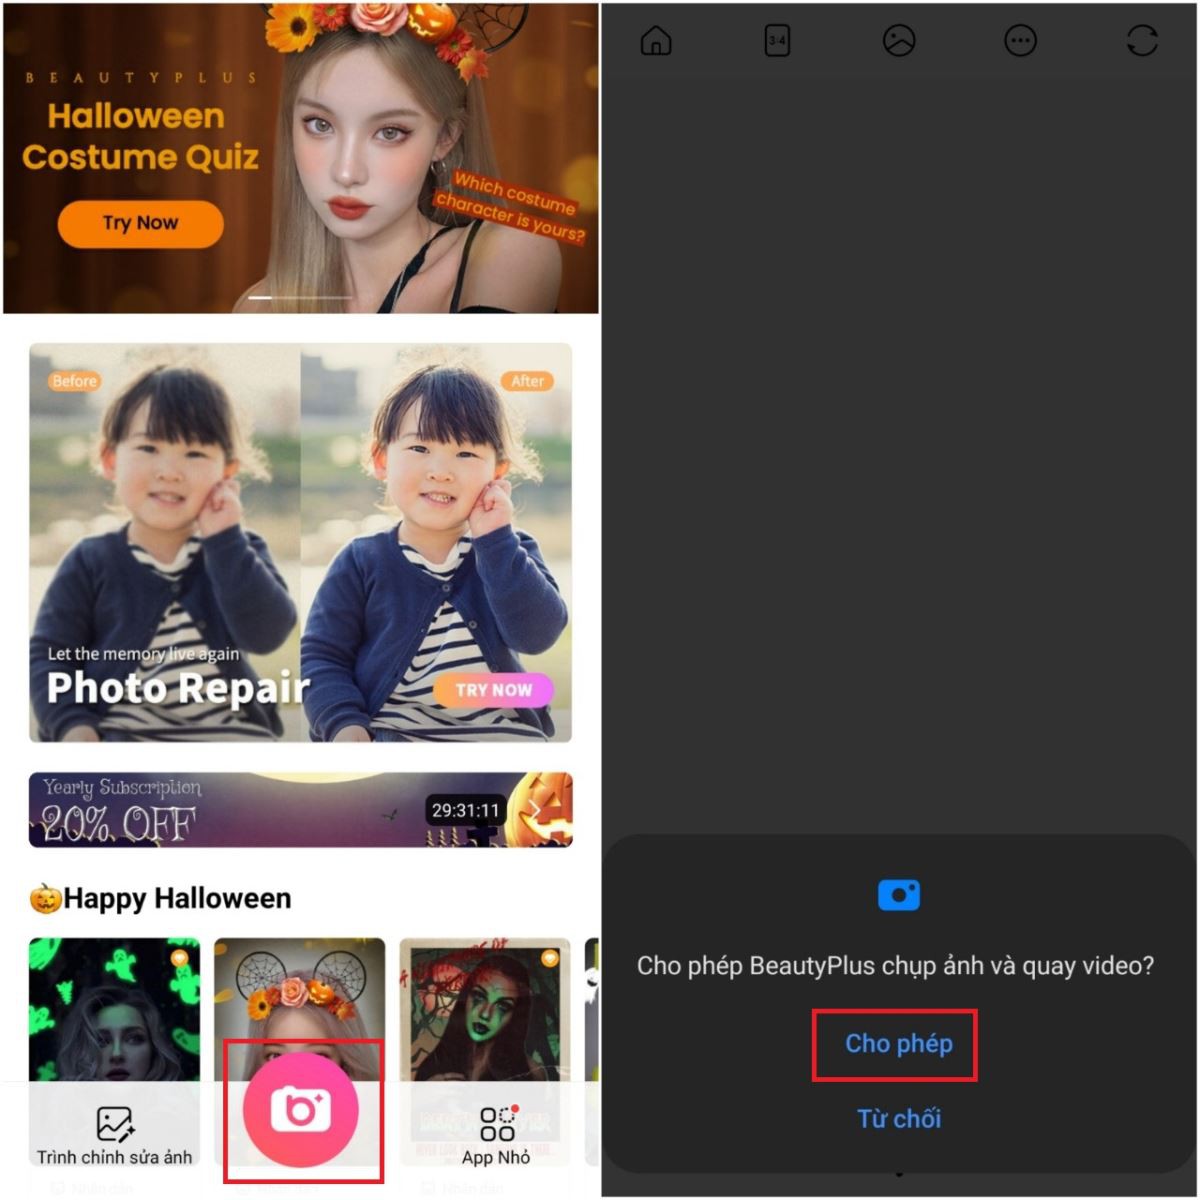 Cách sử dụng BeautyPlus để có những bức hình selfie đẹp hơn - Fptshop.com.vn